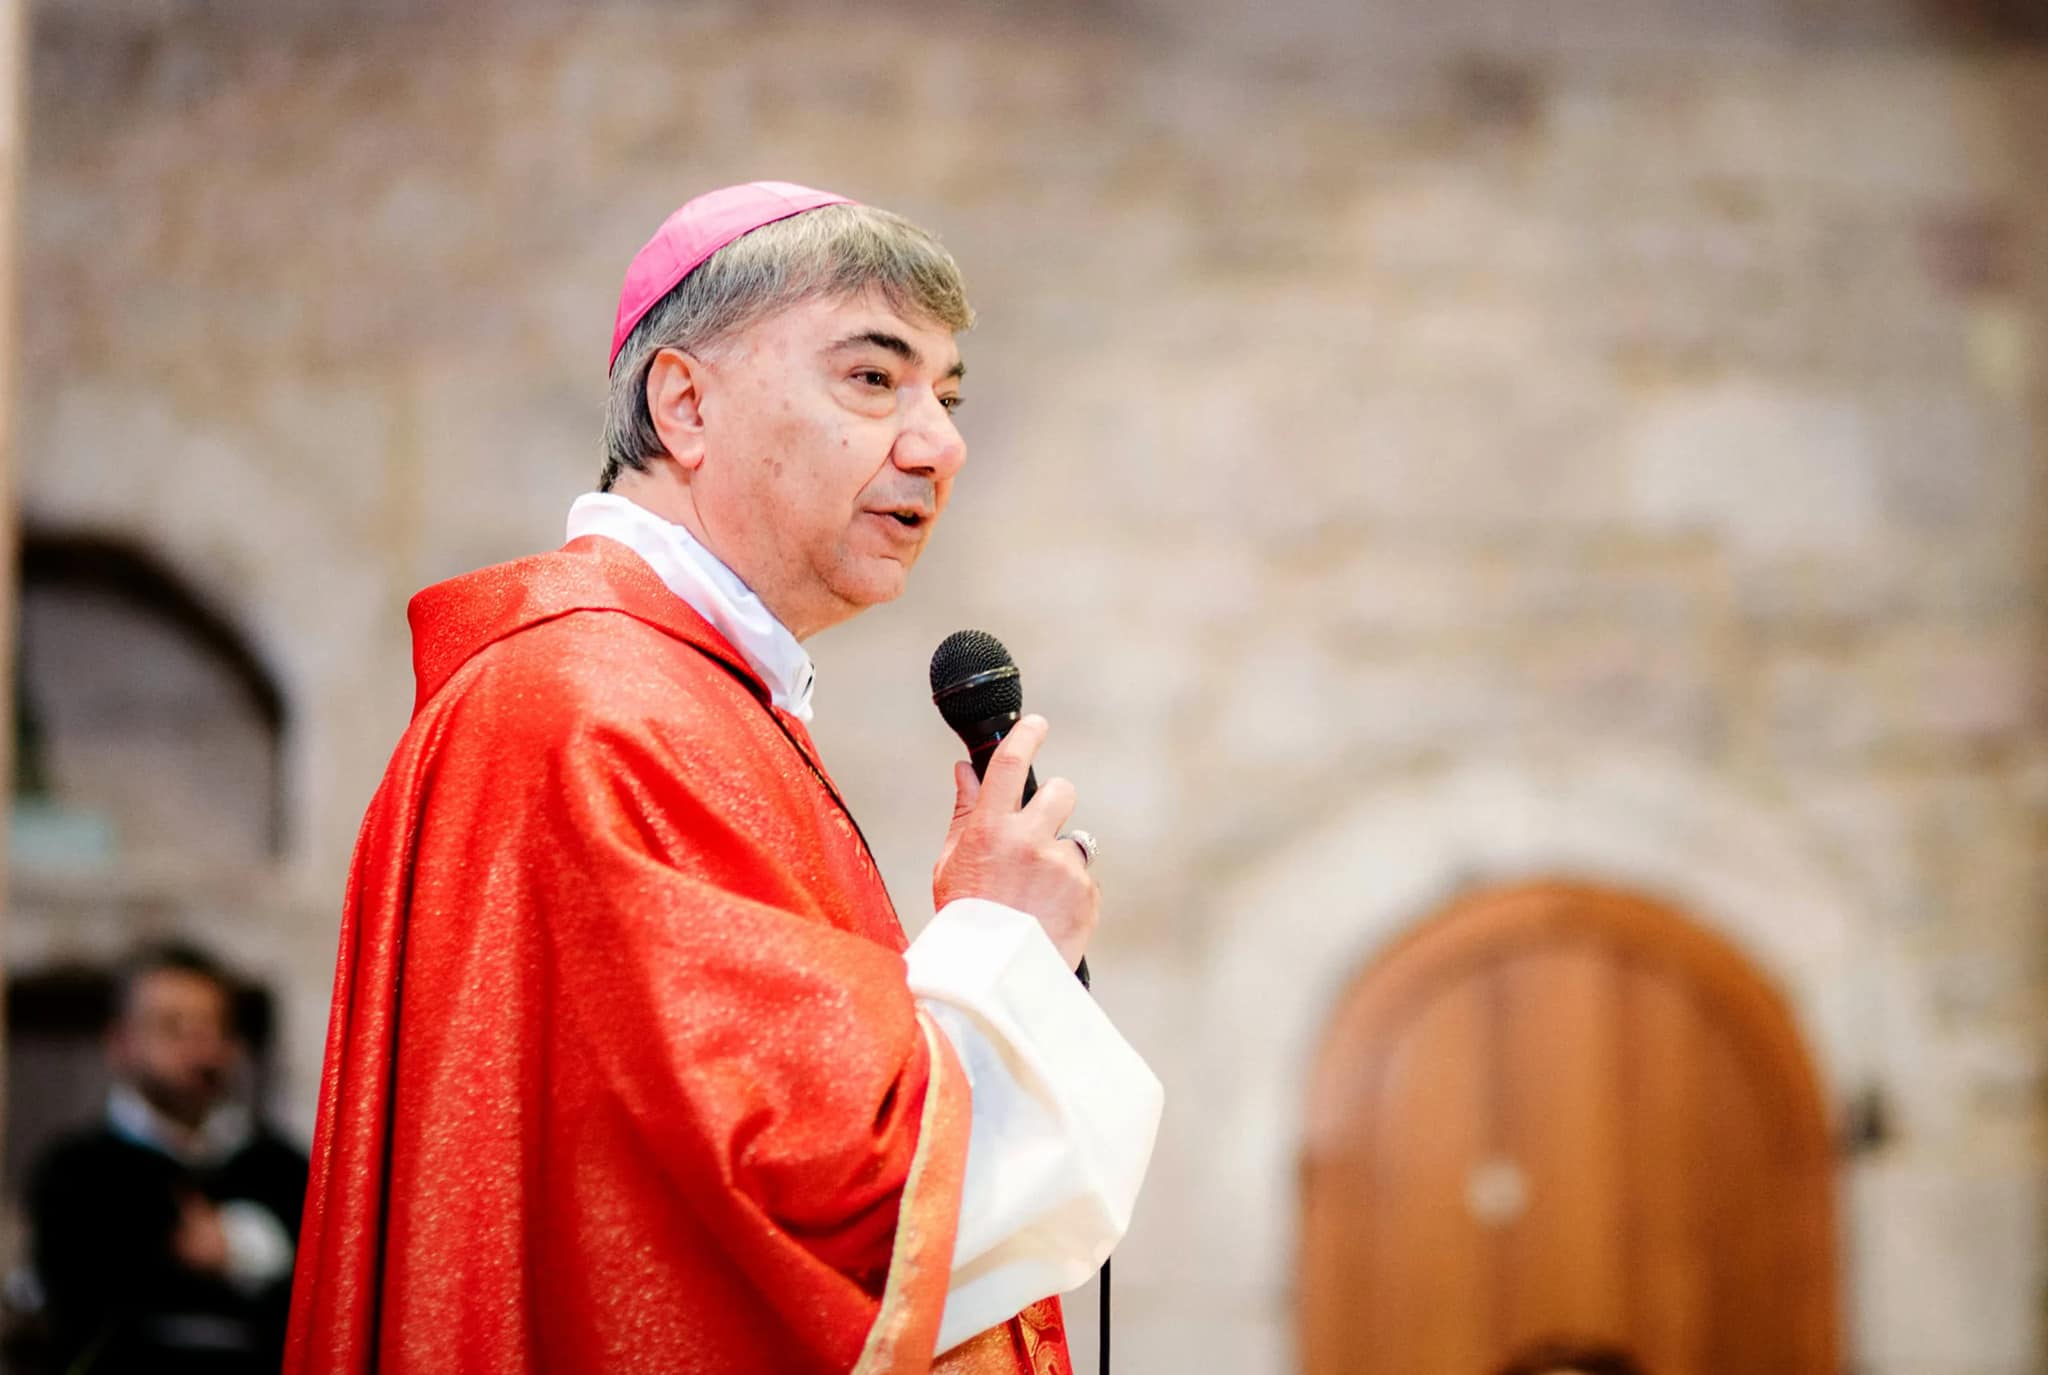 La lettera dell'arcivescovo di Napoli ai preti antimafia: "Voi non scendete a compromessi, come fanno tanti altri"